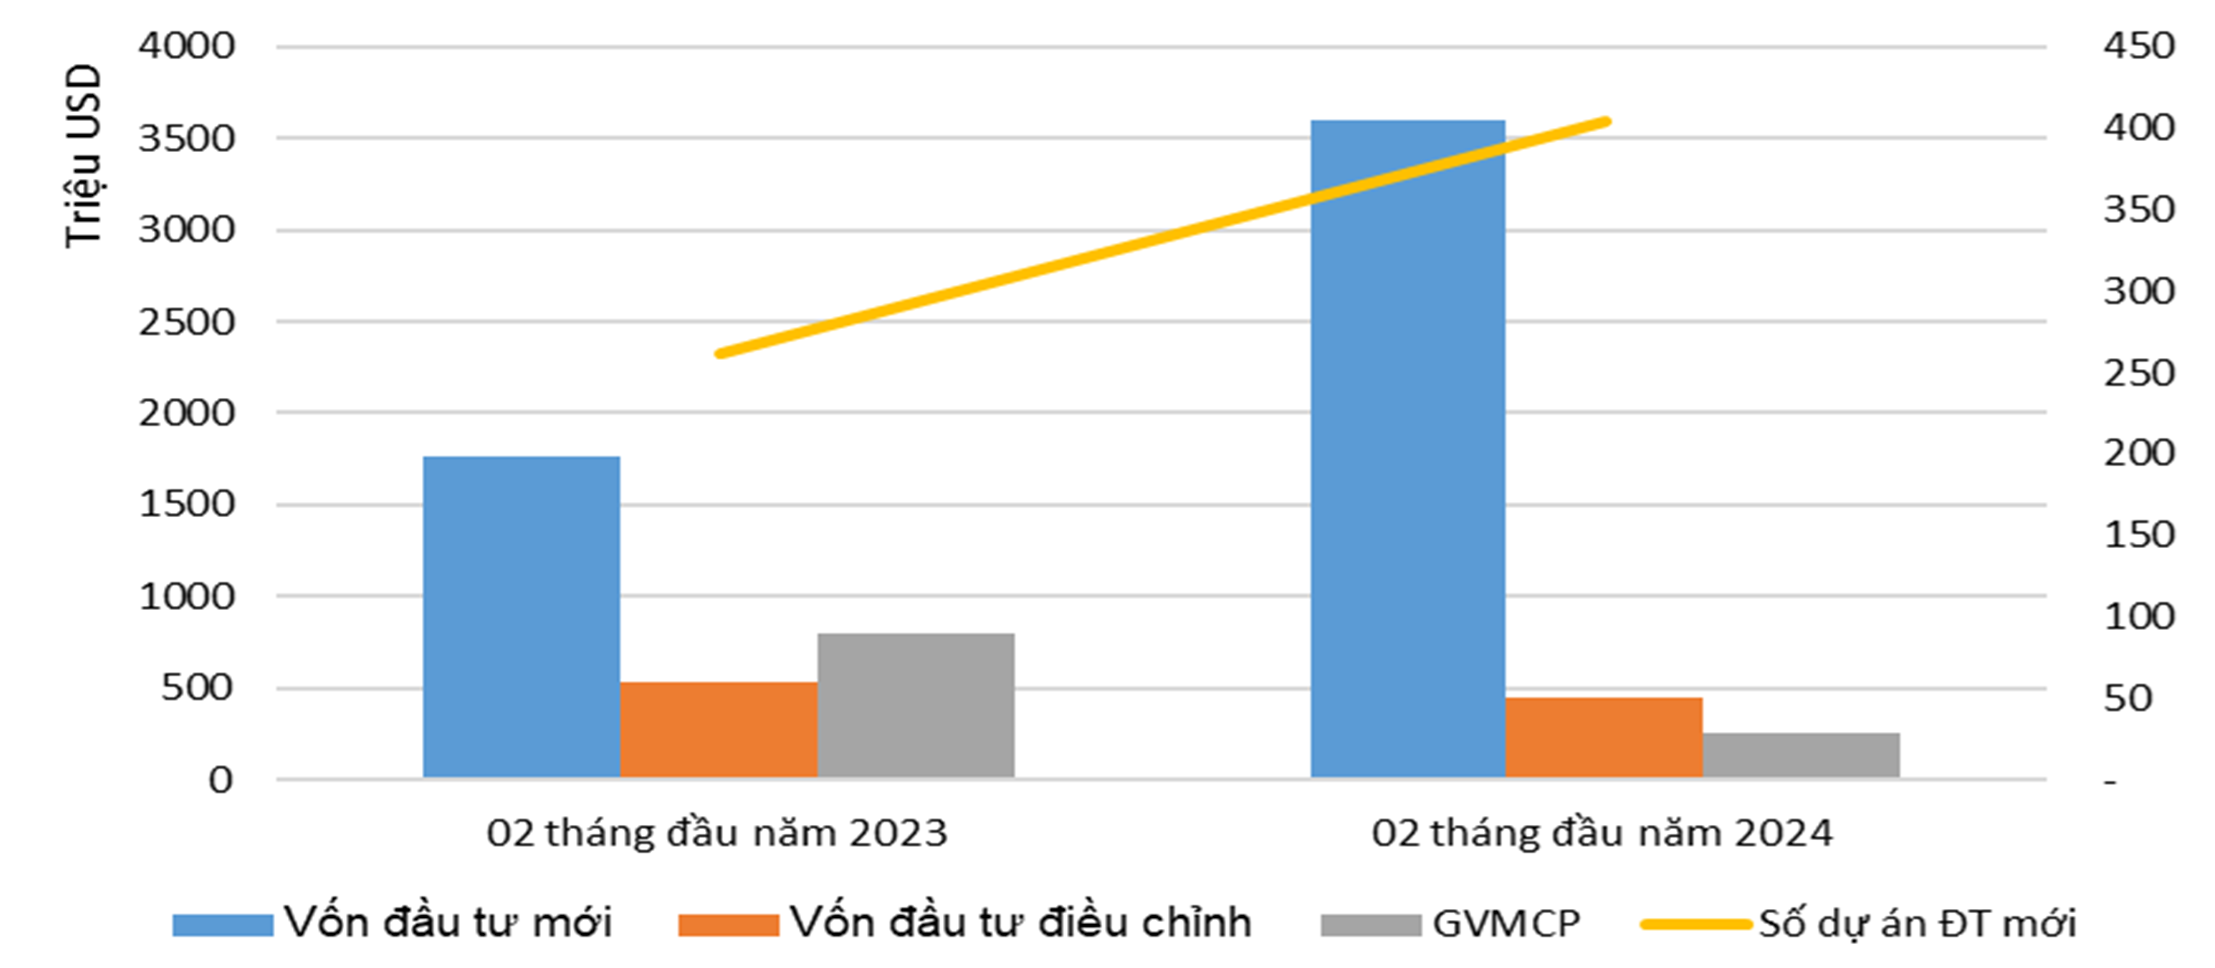 So sánh vốn ĐTNN 02 tháng đầu năm 2024 với cùng kỳ